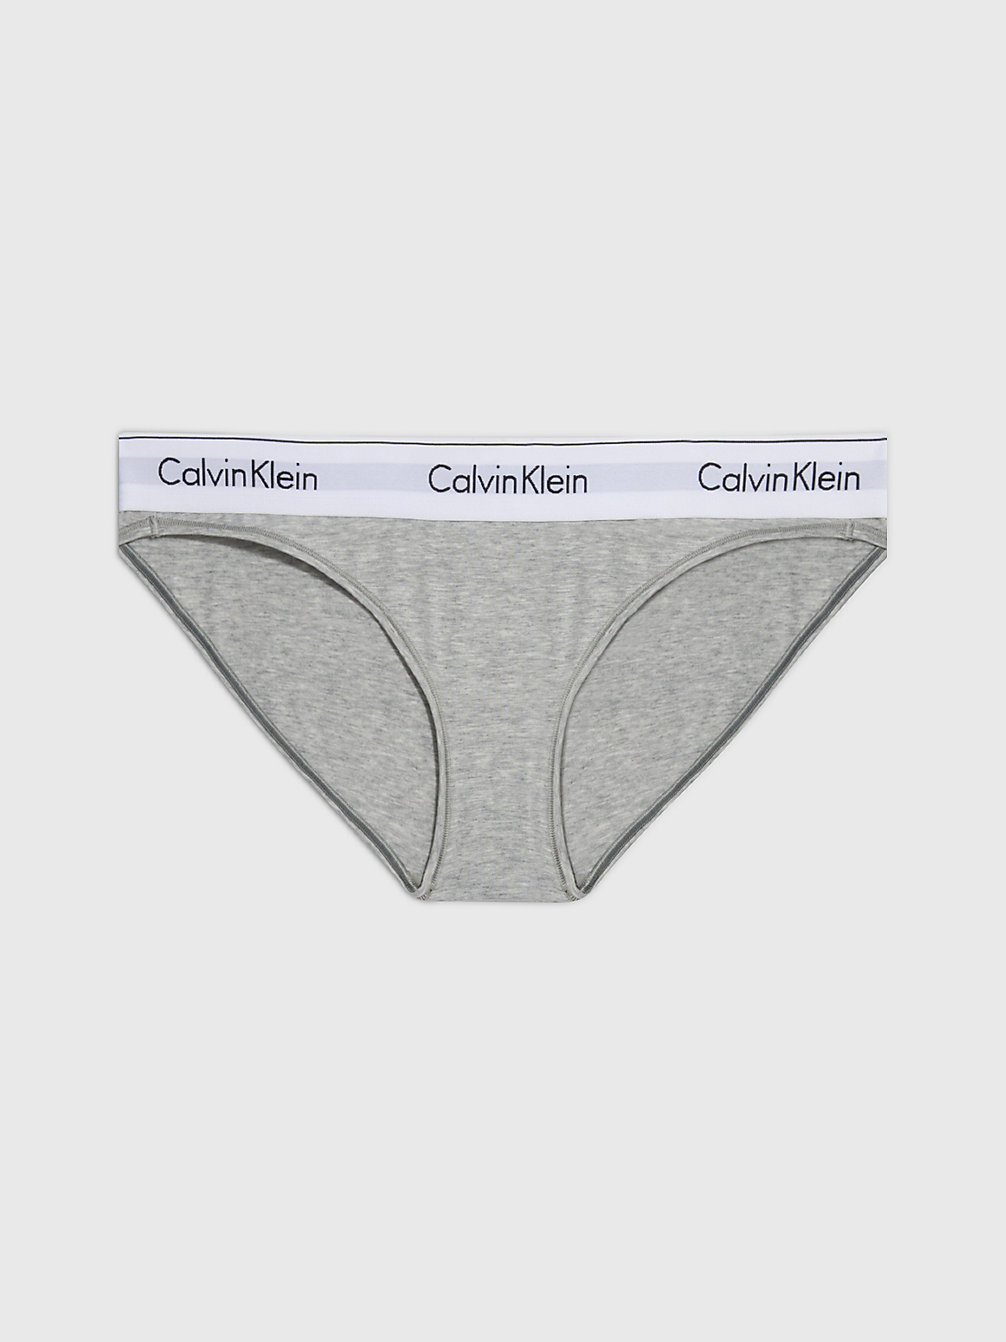 GREY HEATHER > Слипы - Modern Cotton > undefined Женщины - Calvin Klein